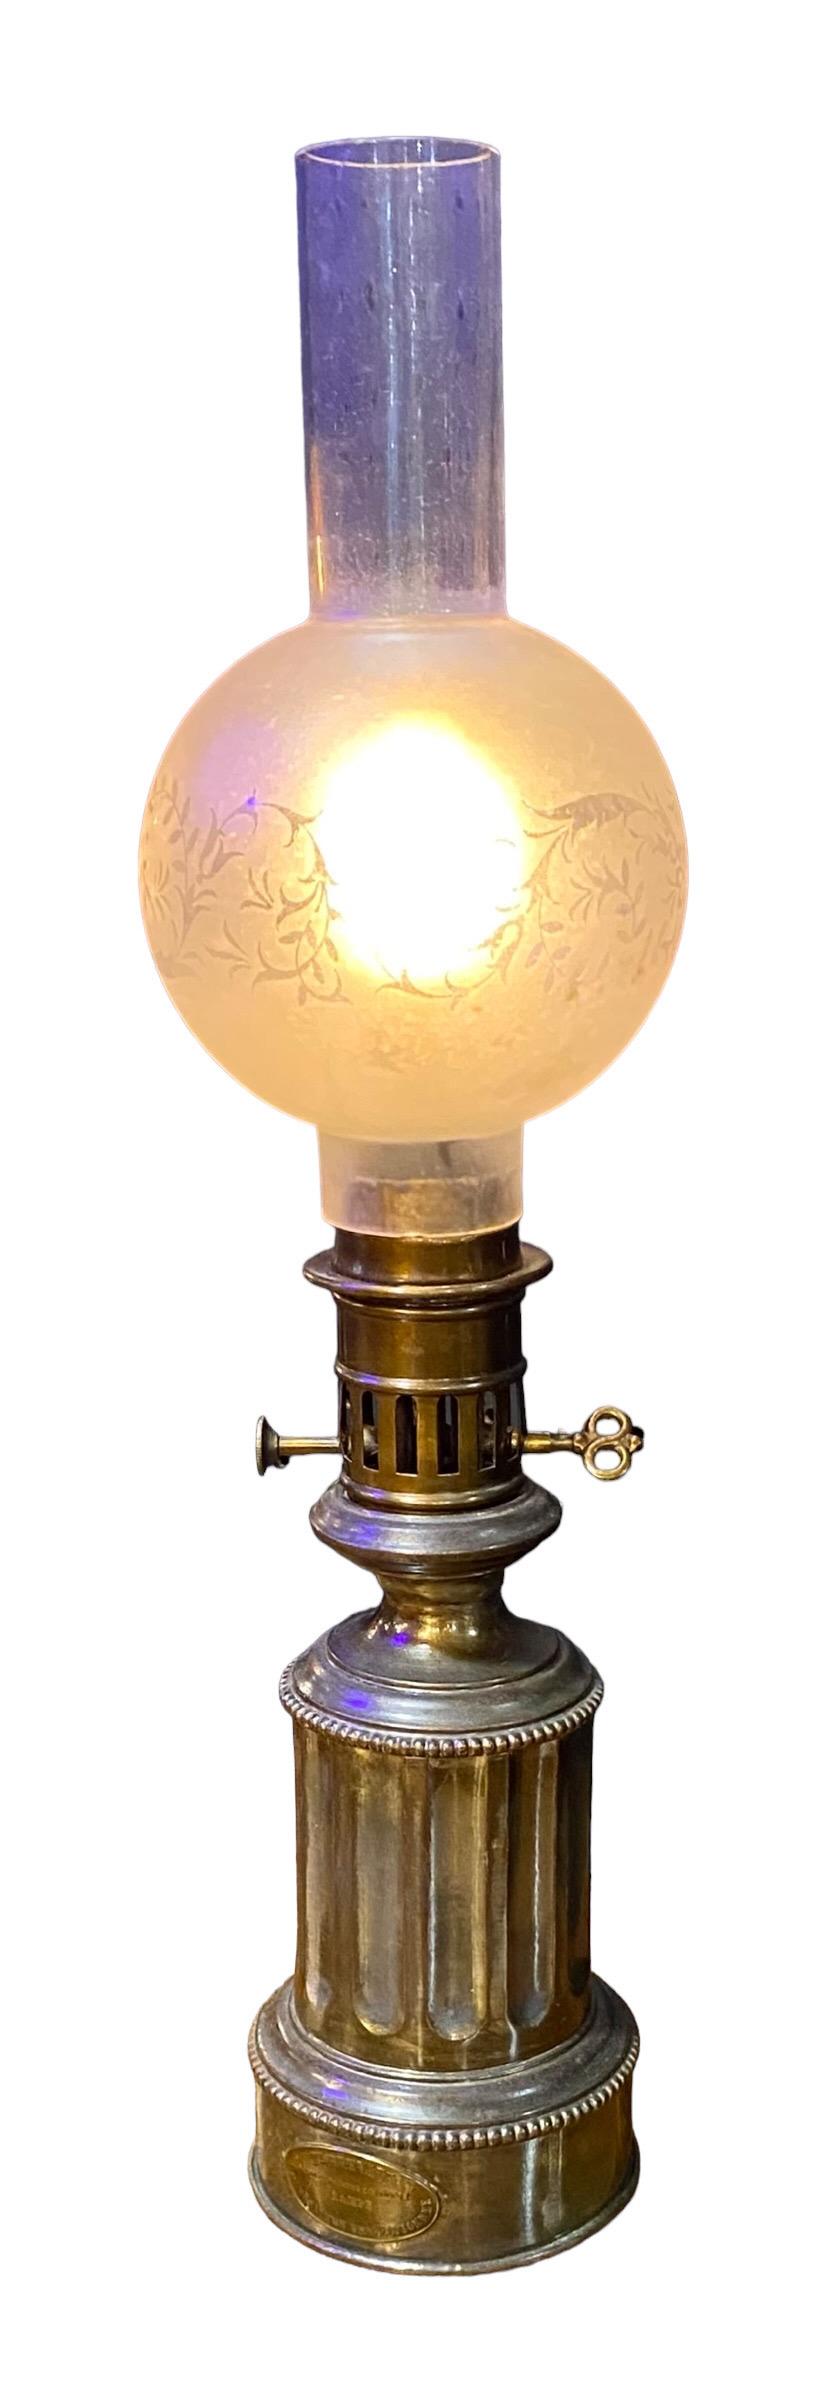 Louis-Philippe Ancienne lampe modératrice française du milieu du 19e siècle maintenant électrifiée